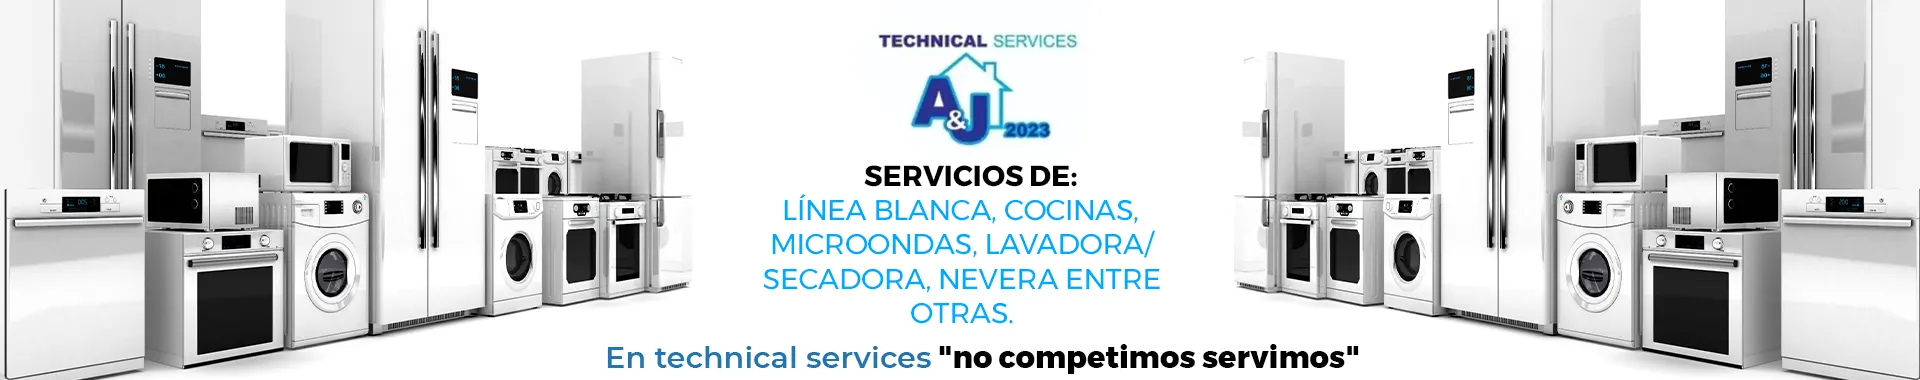 Imagen 2 del perfil de Technical Services A&J 2023